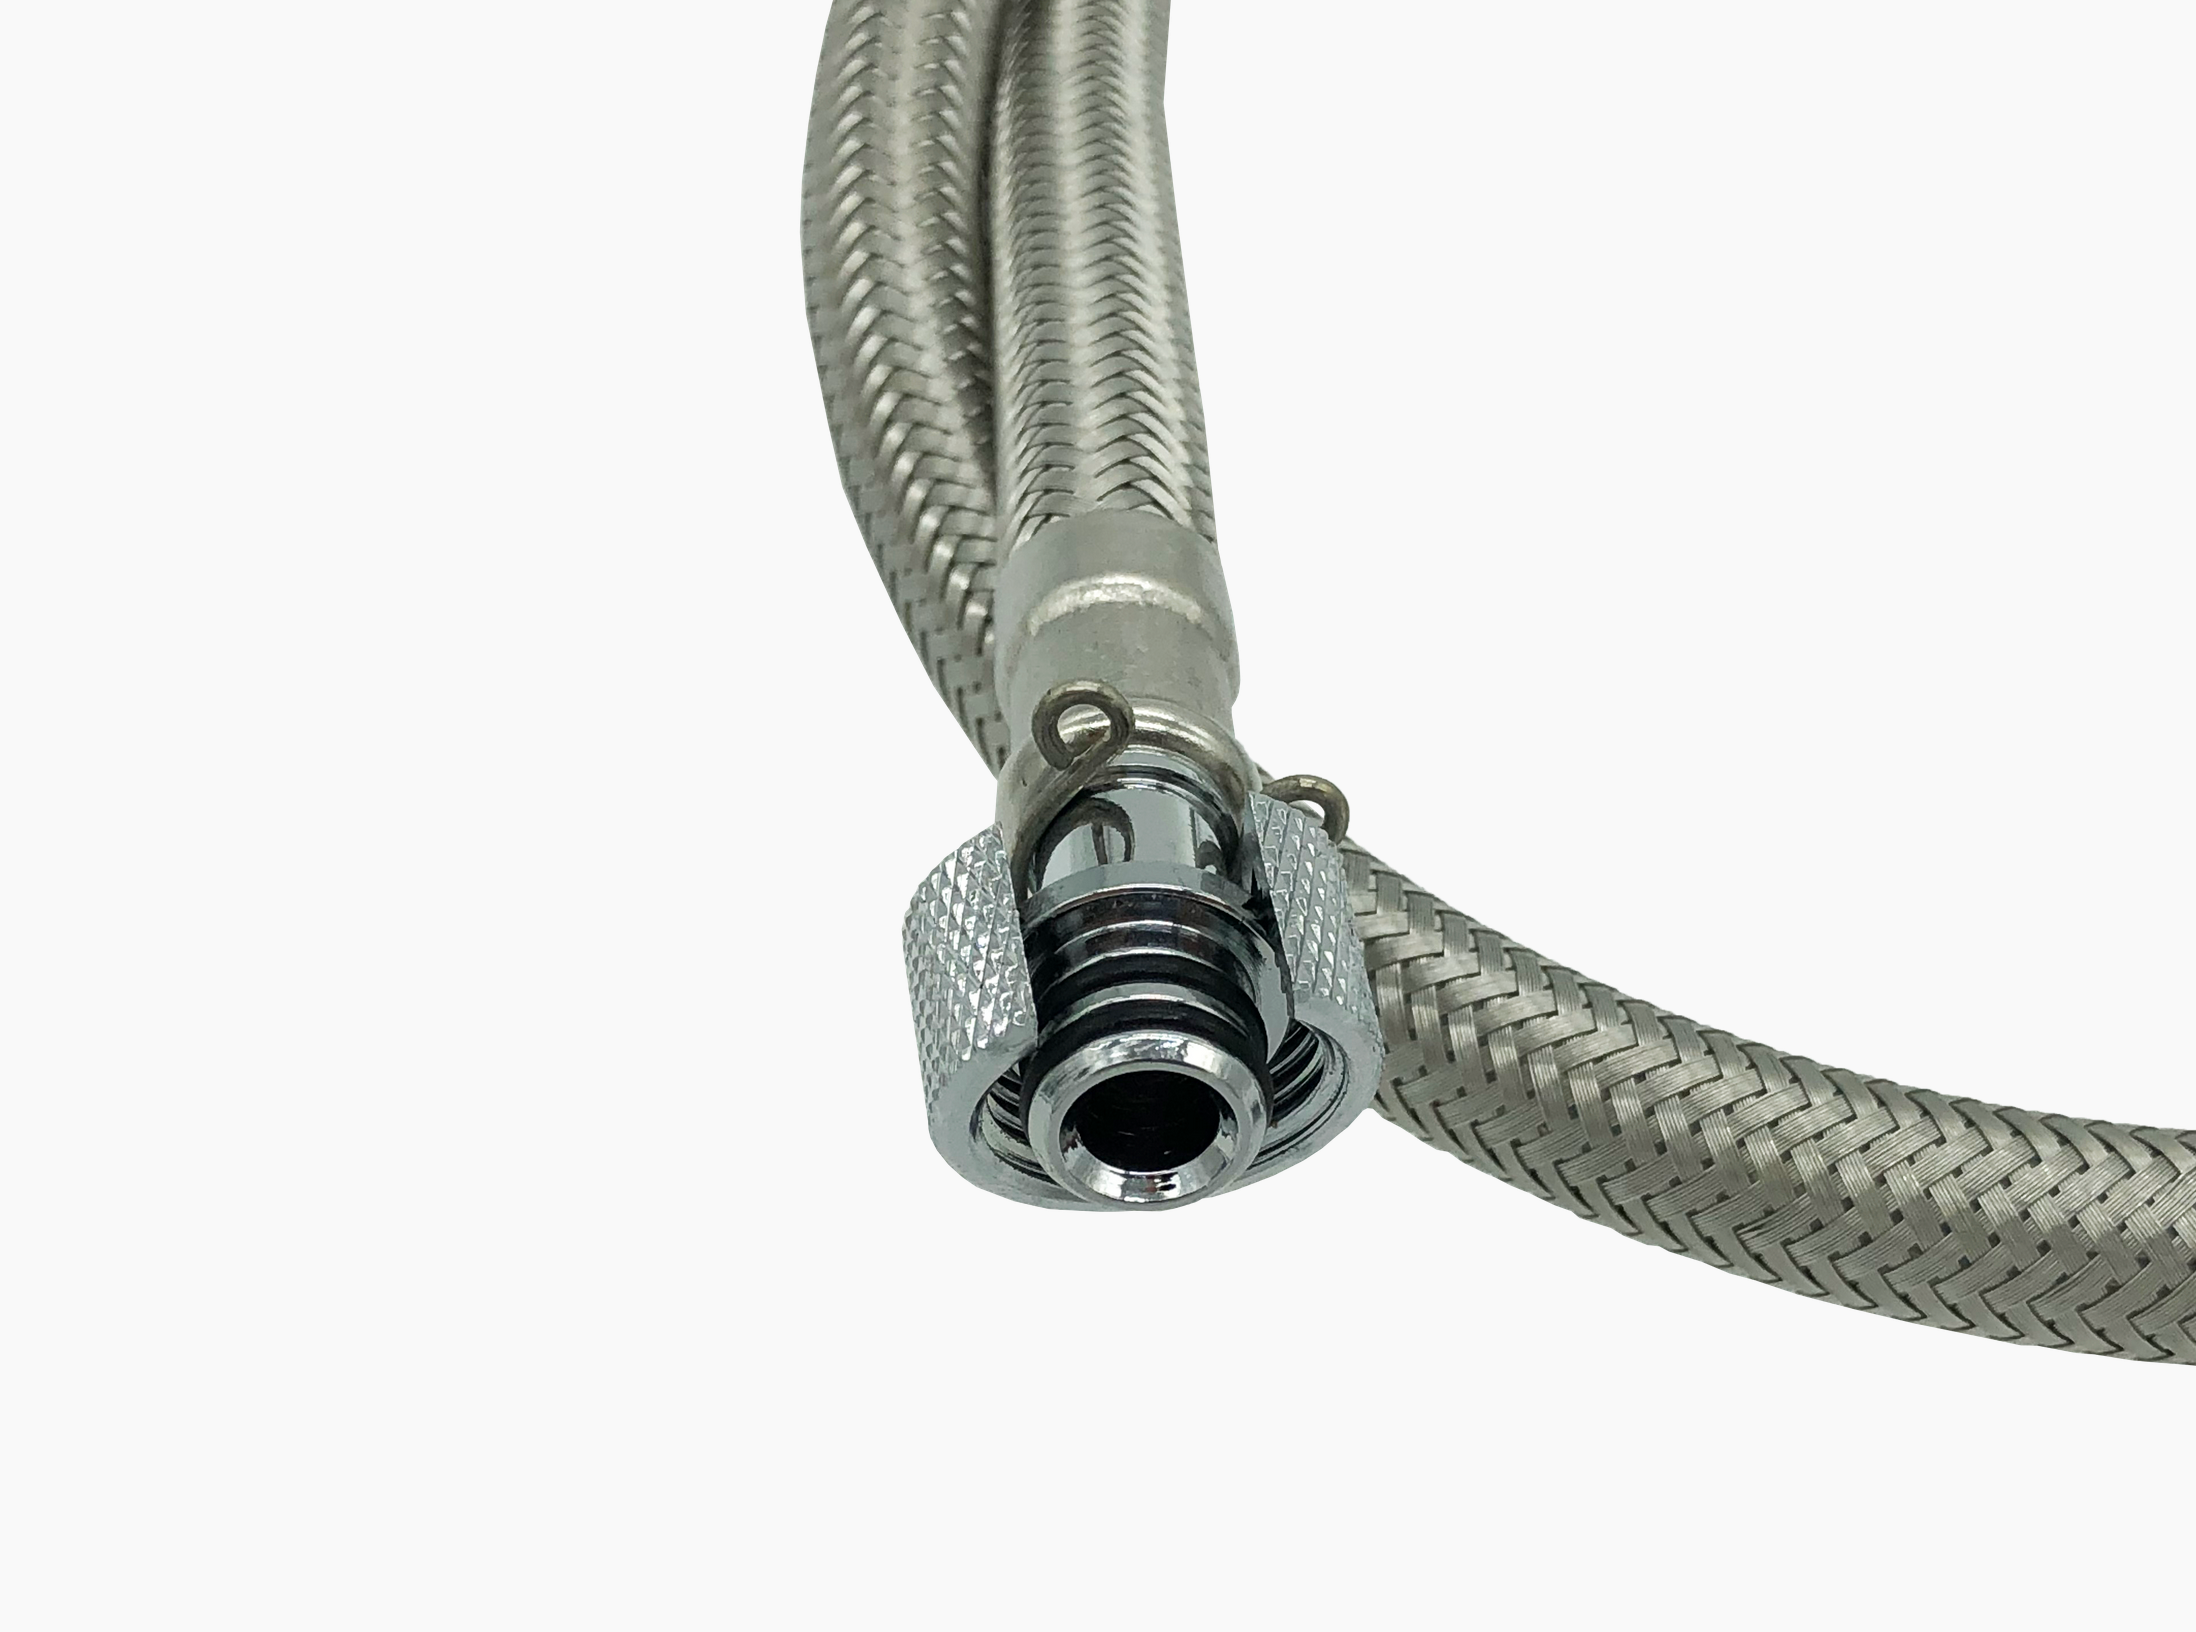 connection hose